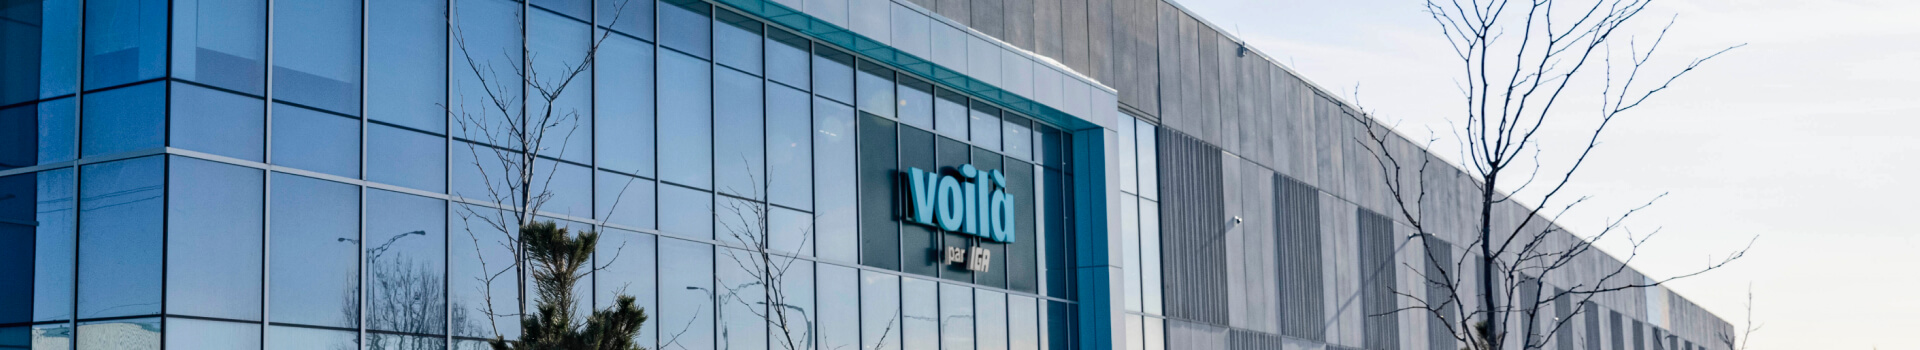 Une image montrant le bâtiment avec le logo de la marque Voila au centre.